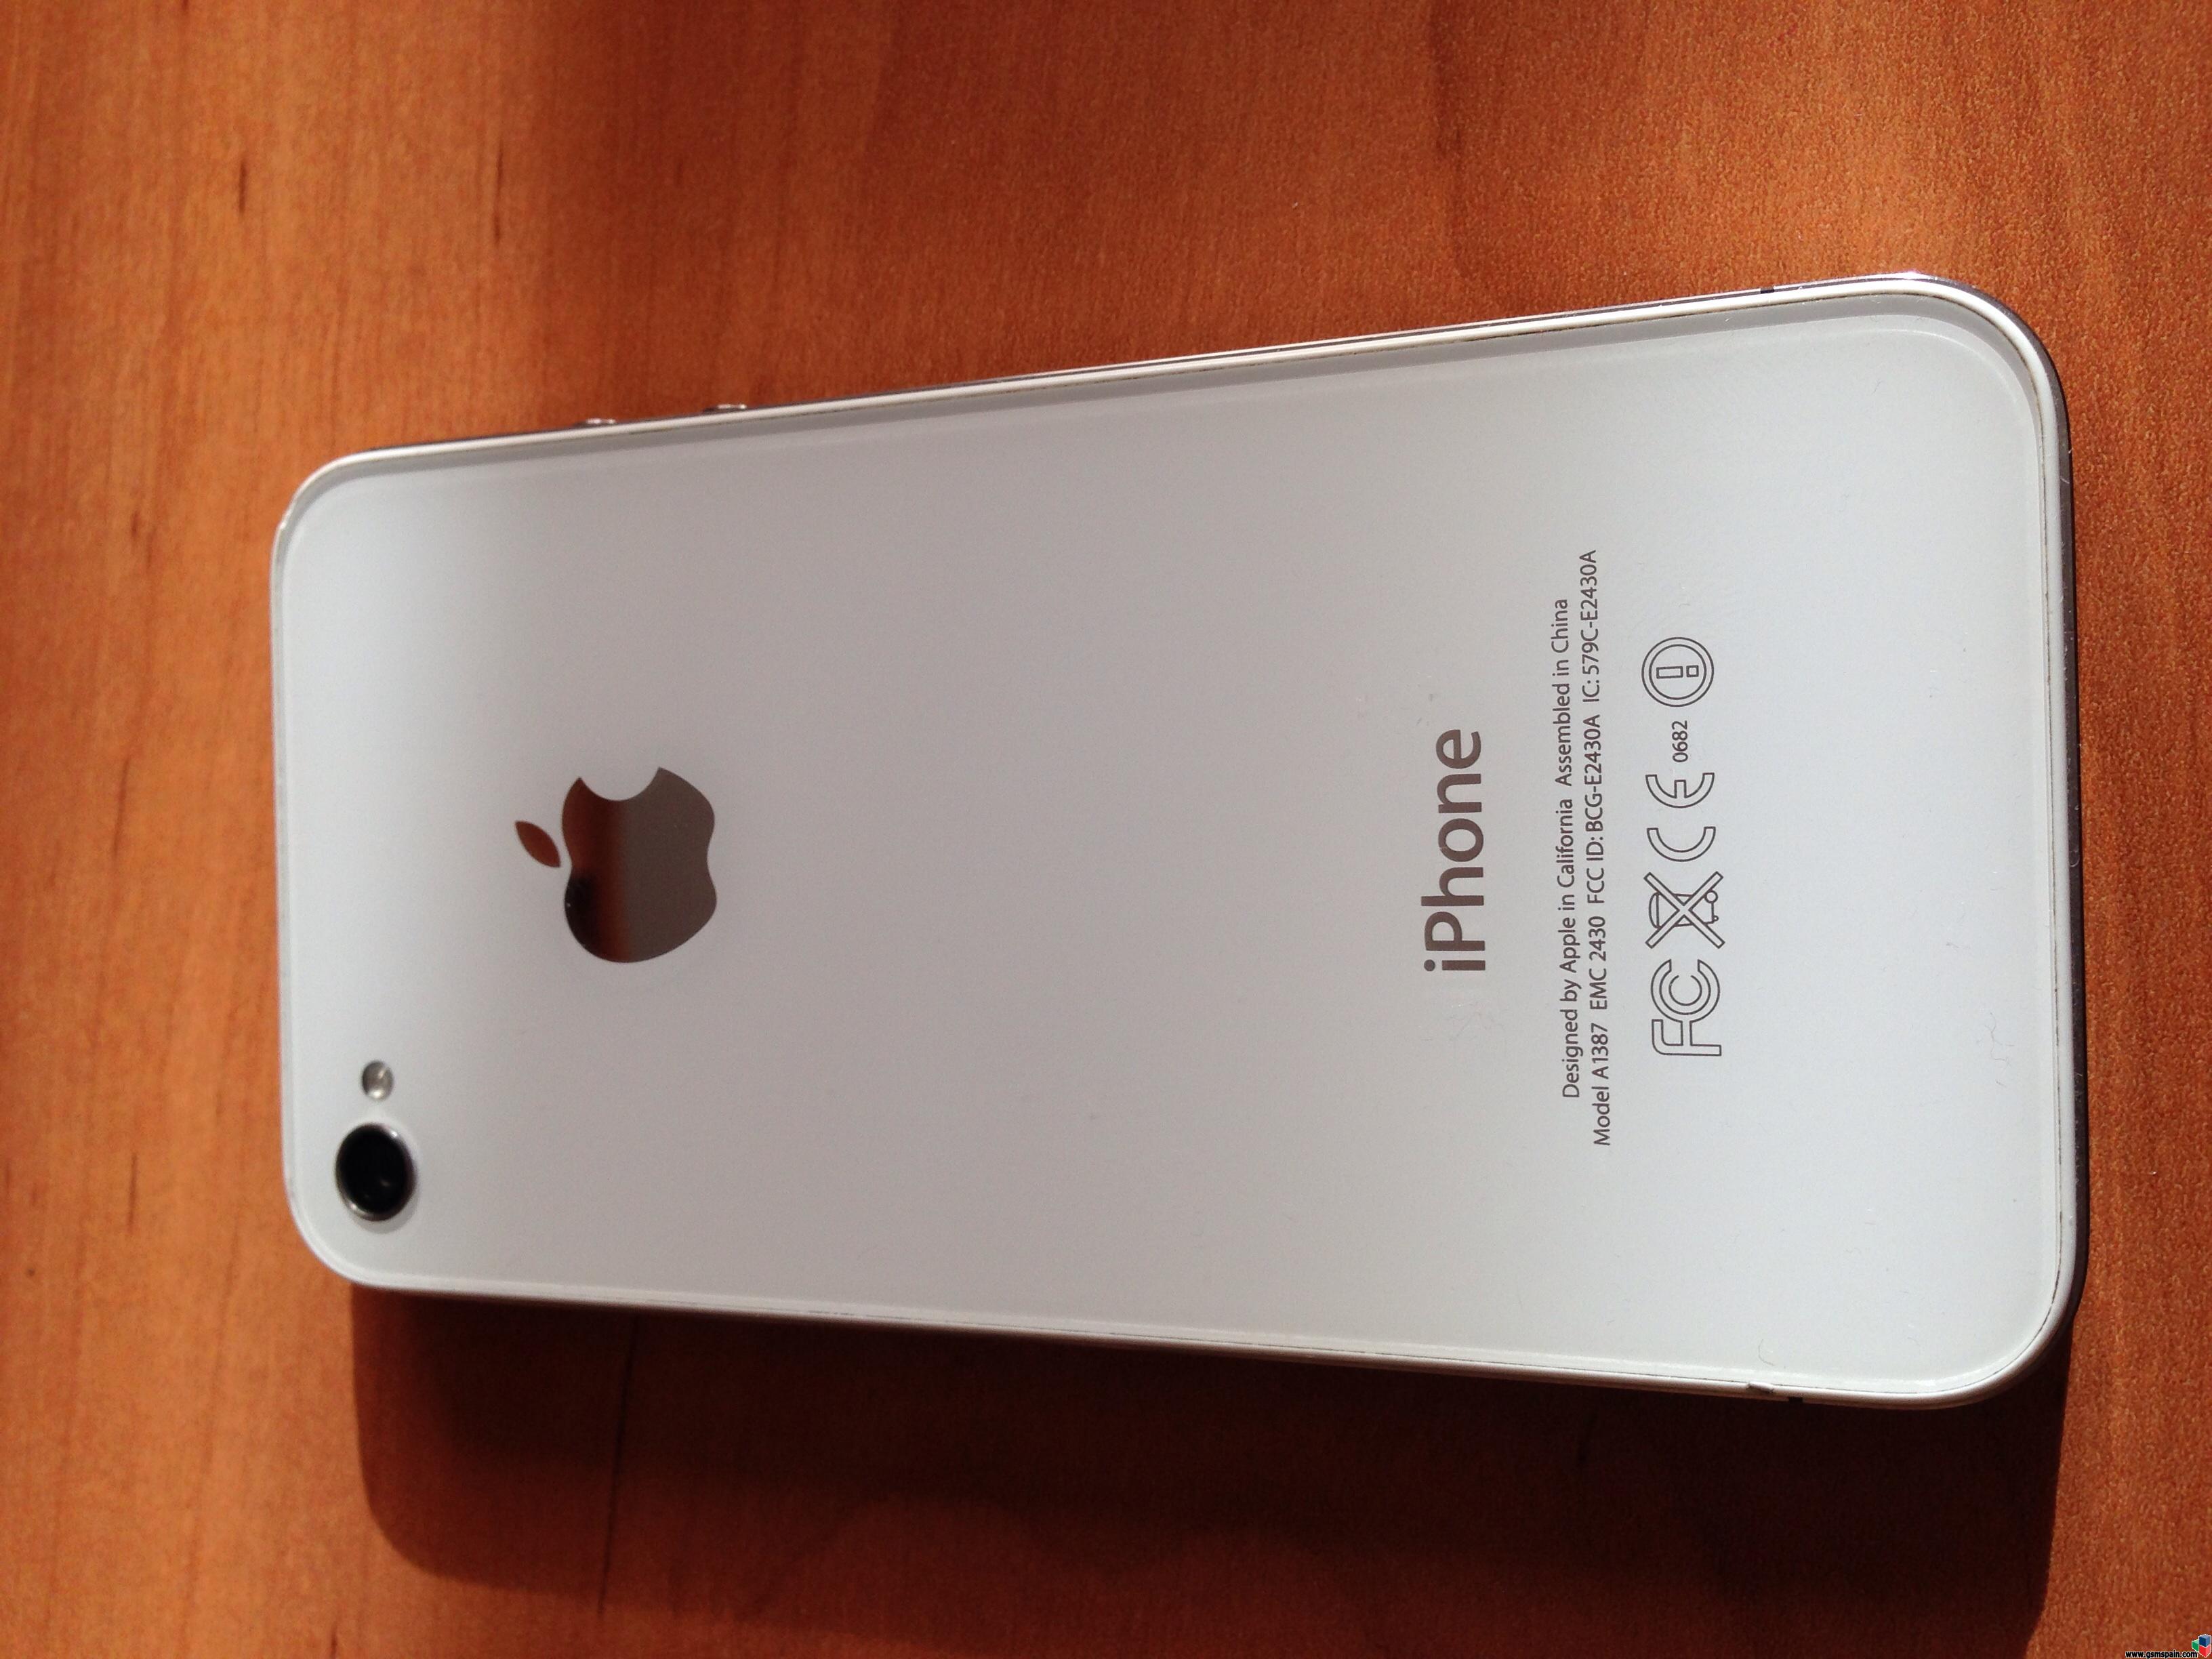 [VENDO] iPhone 4S libre, blanco, 16gb con los 5.1.1 y jailbreak